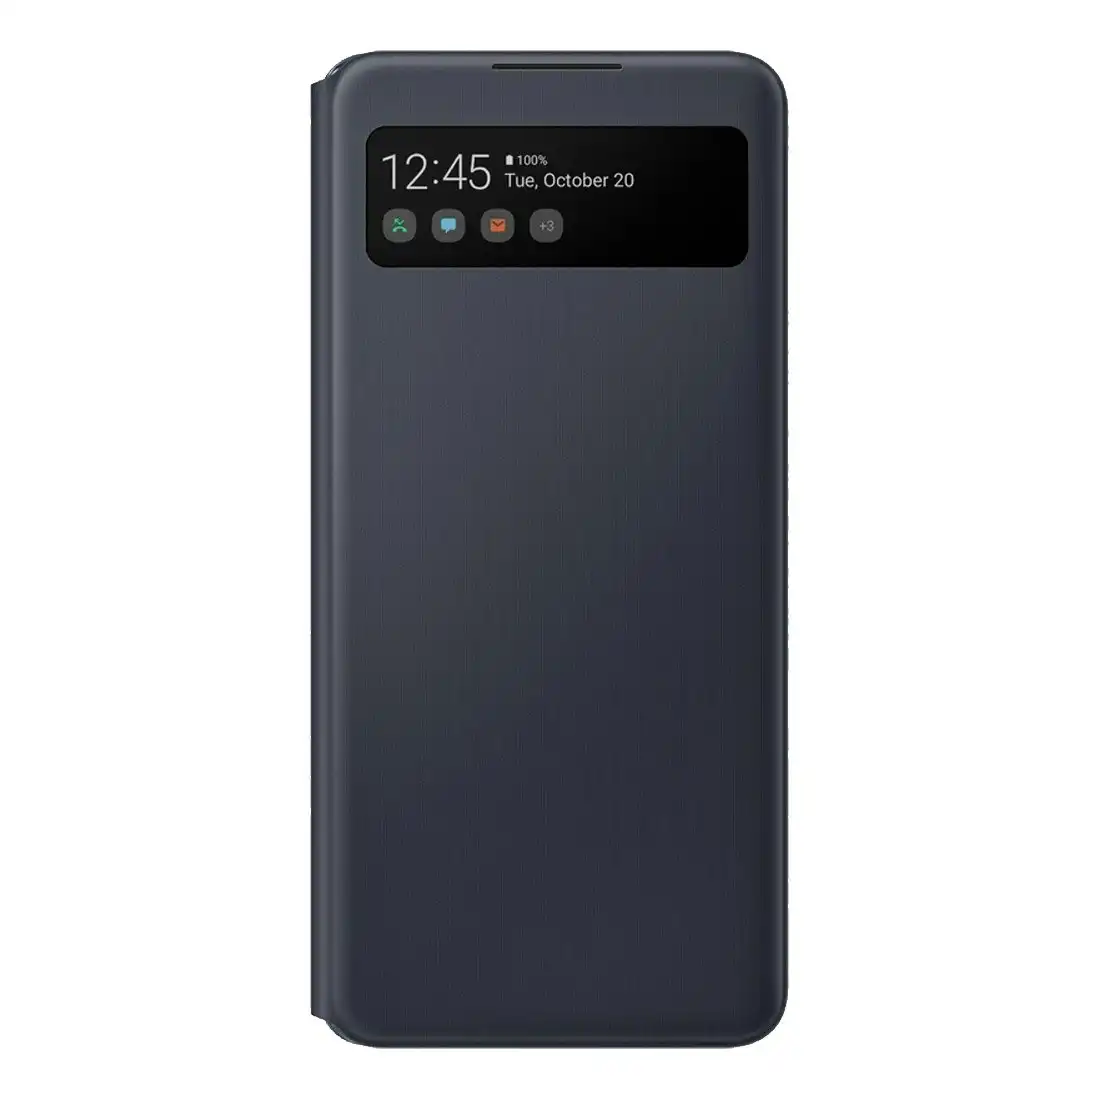 Samsung Galaxy A42 5G S View Wallet Cover EF-EA426PBEGWW - Black